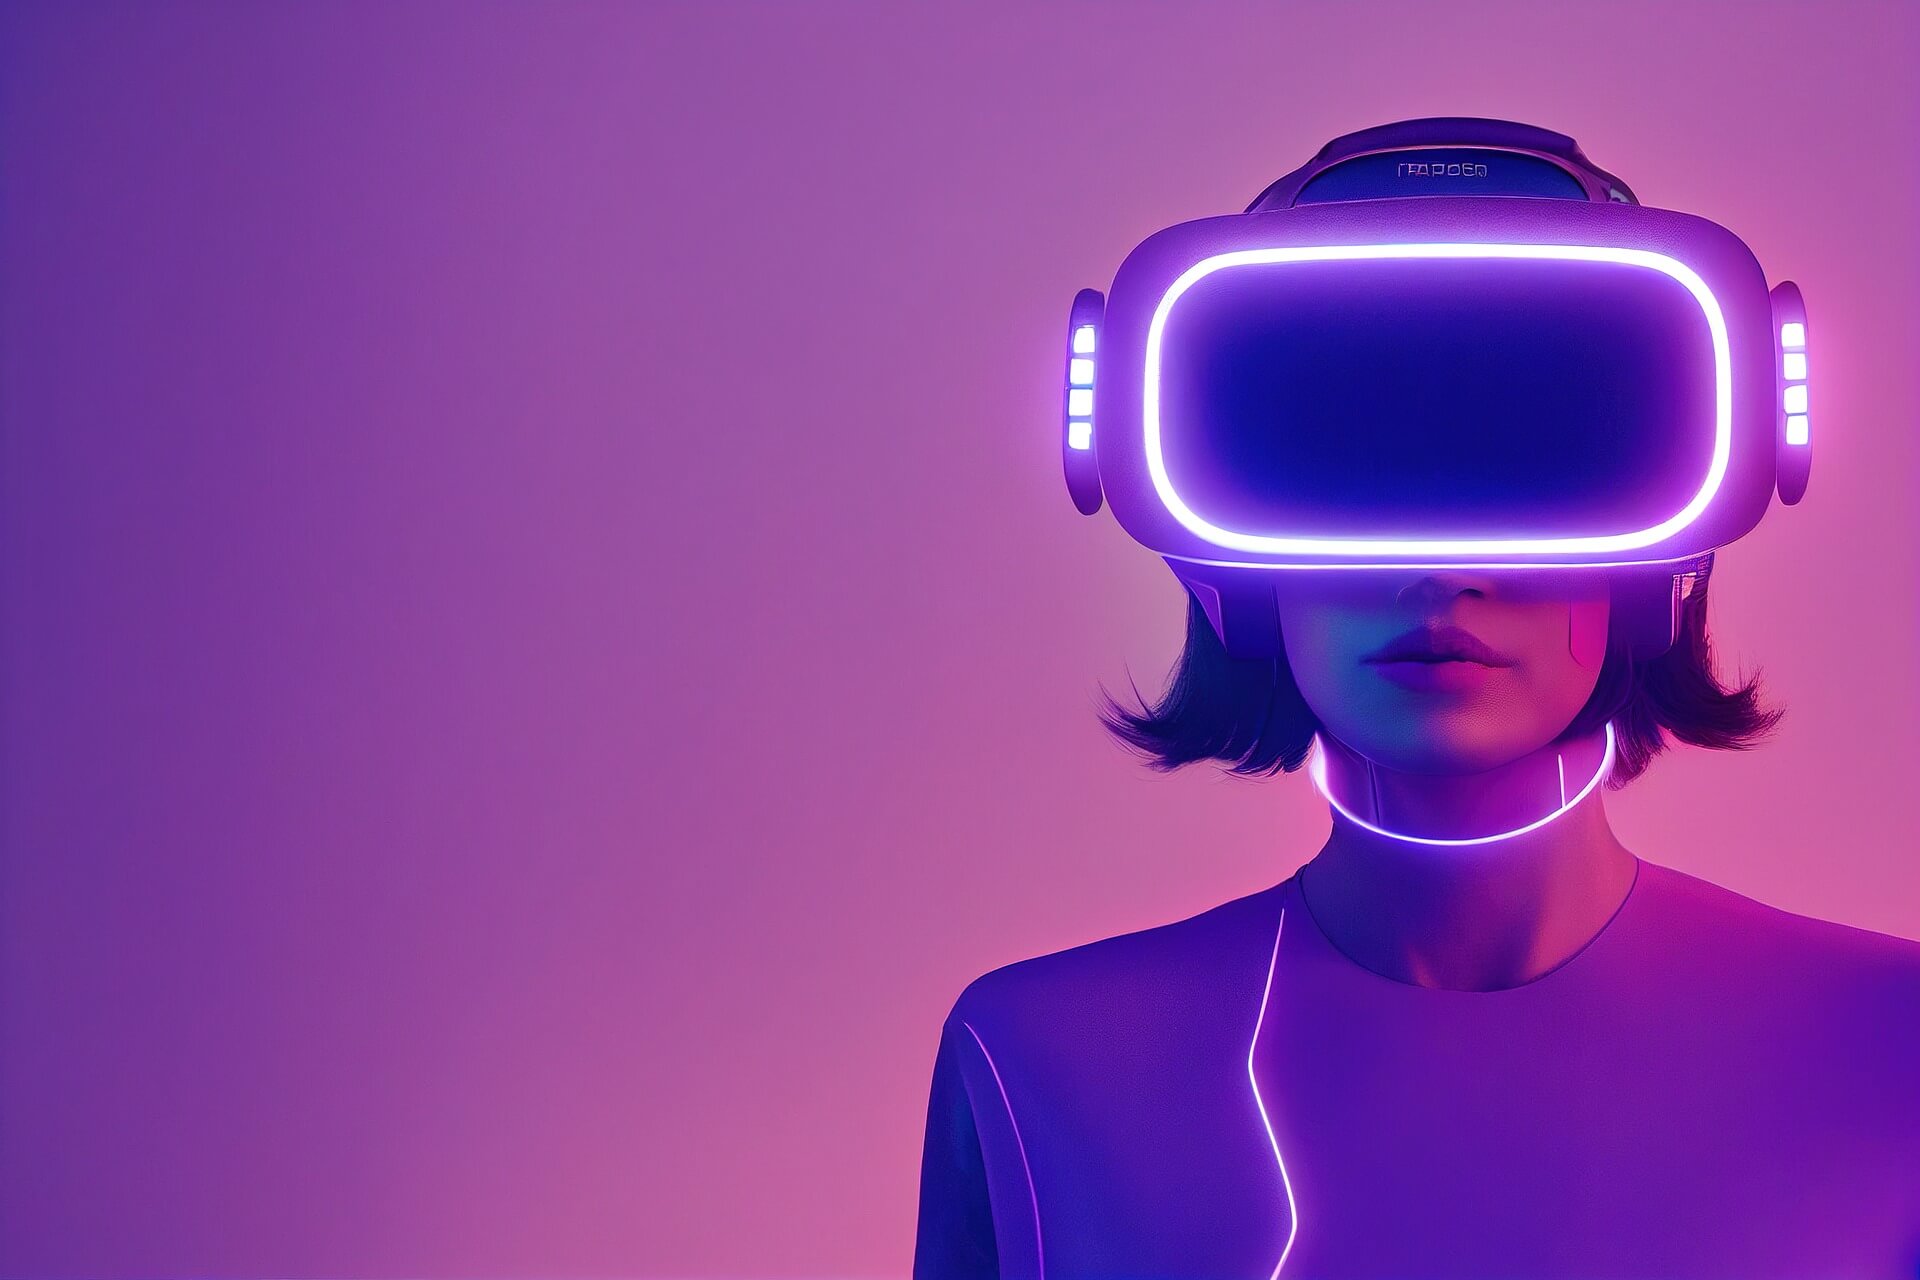 图片展示一位女性佩戴先进的虚拟现实头盔，紫色背景下，她的装备散发着未来科技感的冷光。